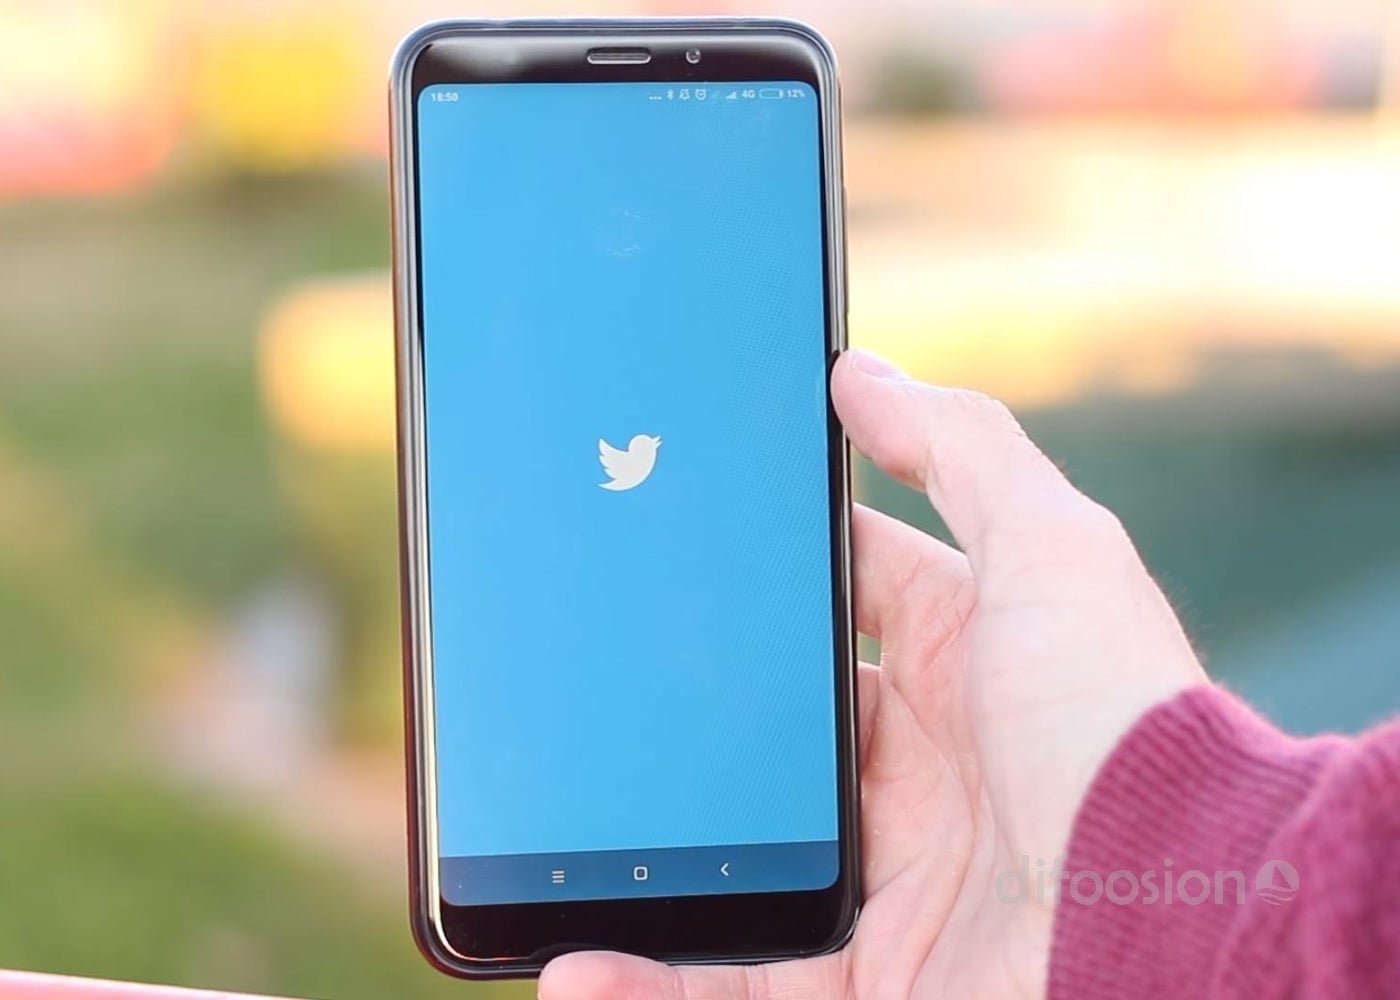 El creador del botón de retuitear se arrepiente: "las redes sociales están rotas"